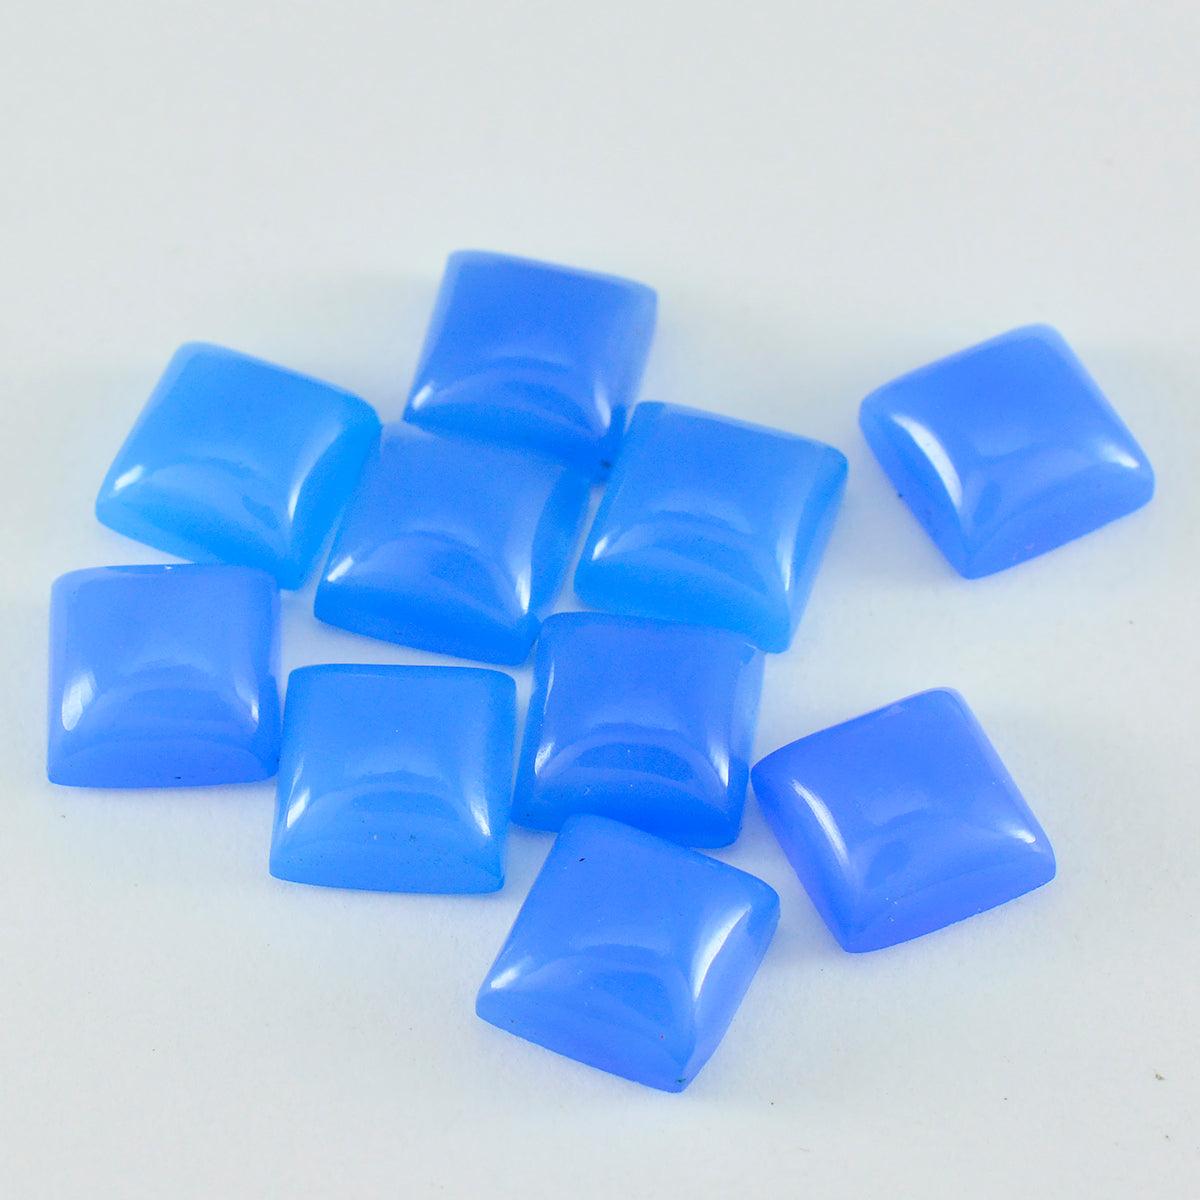 riyogems 1pc cabochon di calcedonio blu 6x6 mm di forma quadrata, gemma di qualità dall'aspetto gradevole